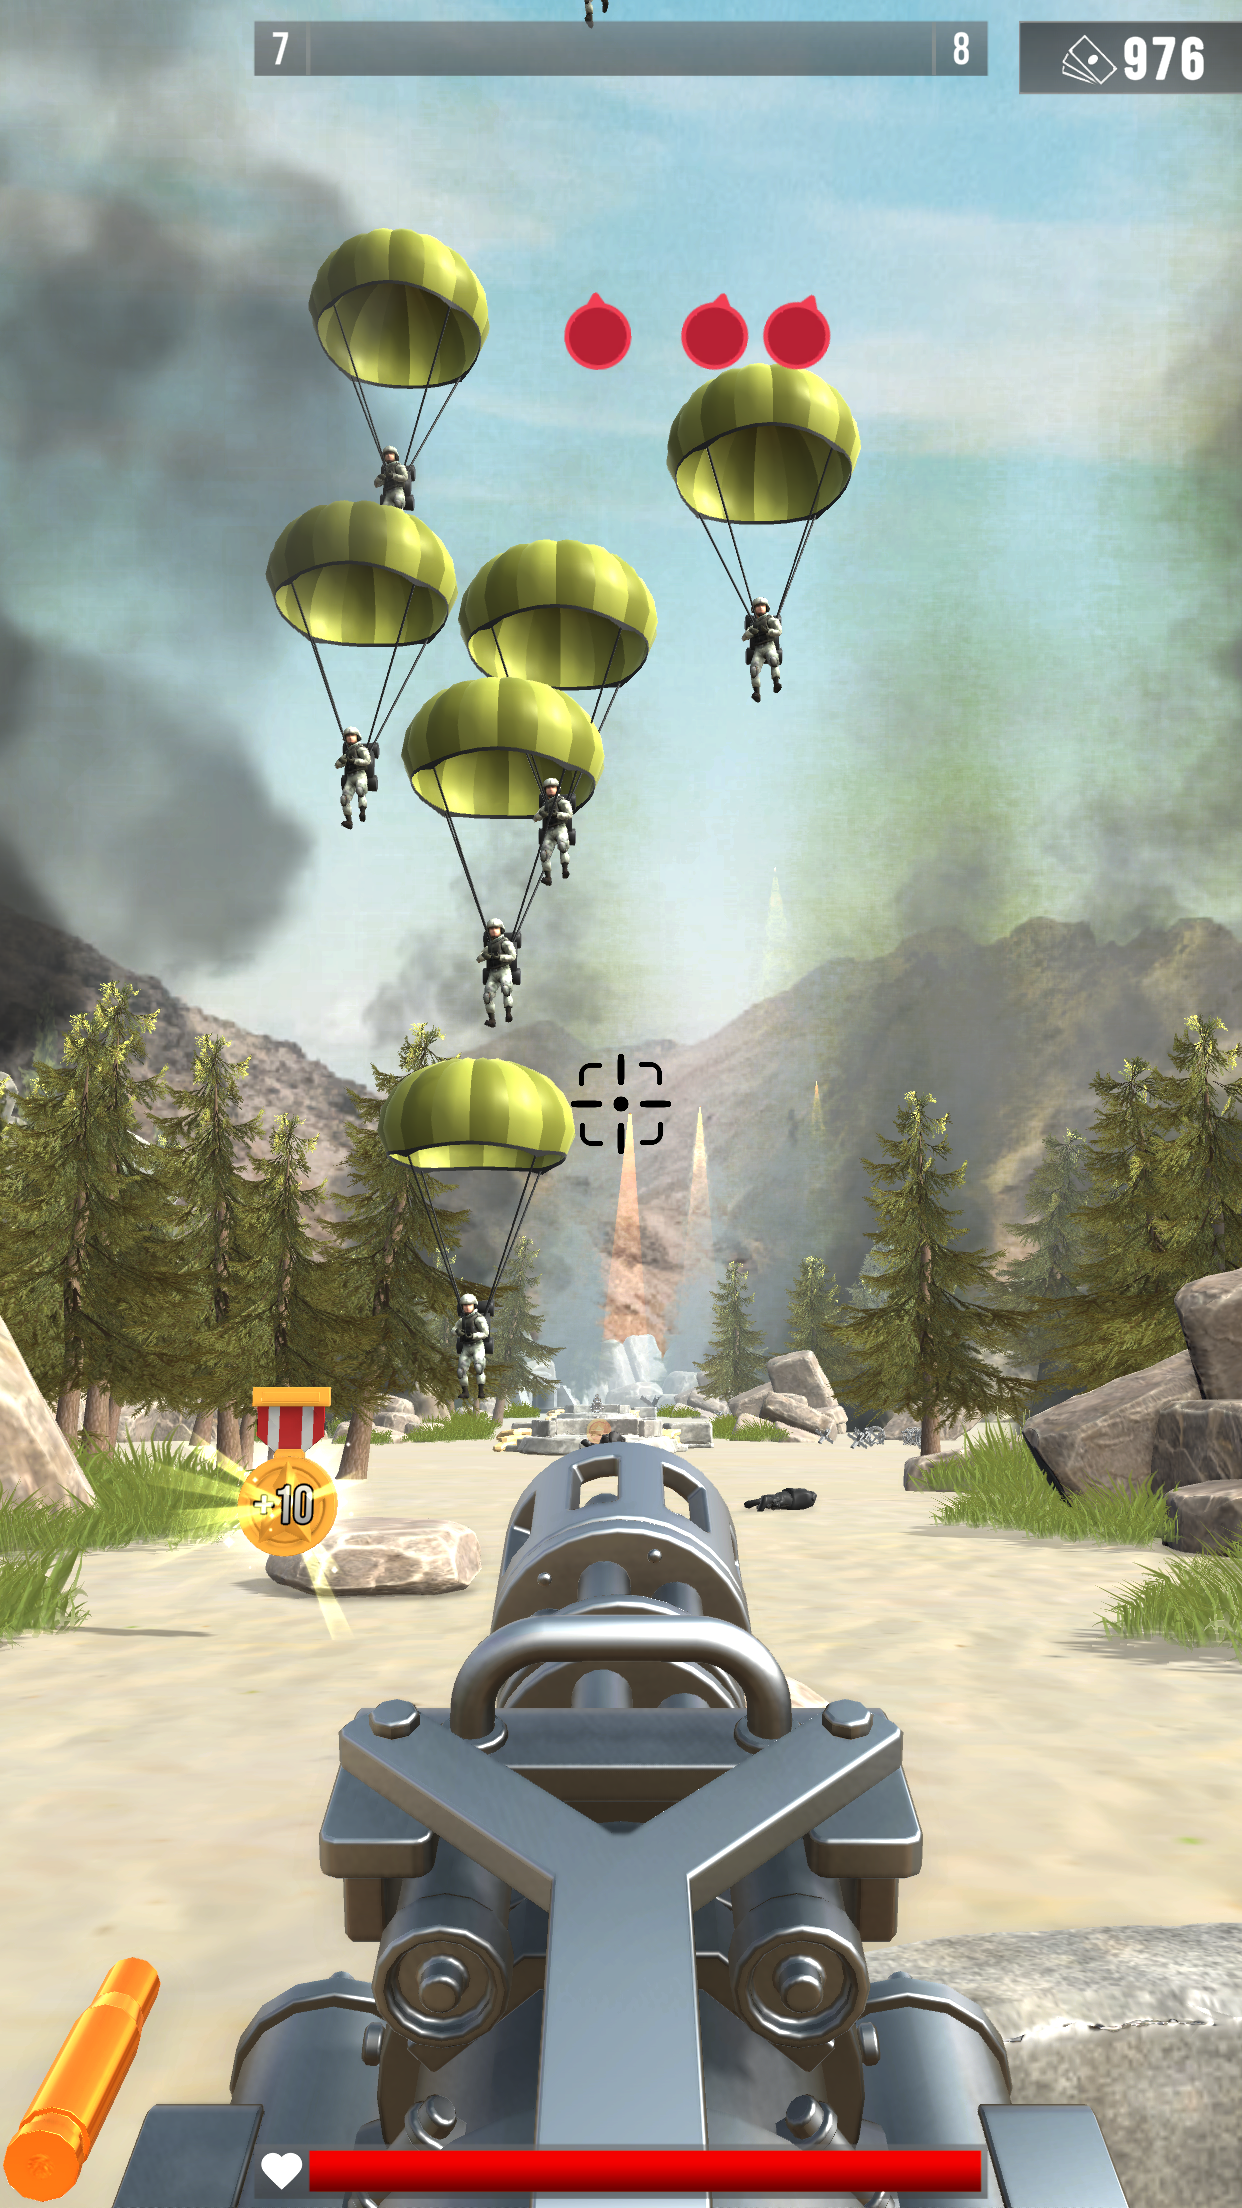 Infantry Attack: War 3D FPS遊戲截圖